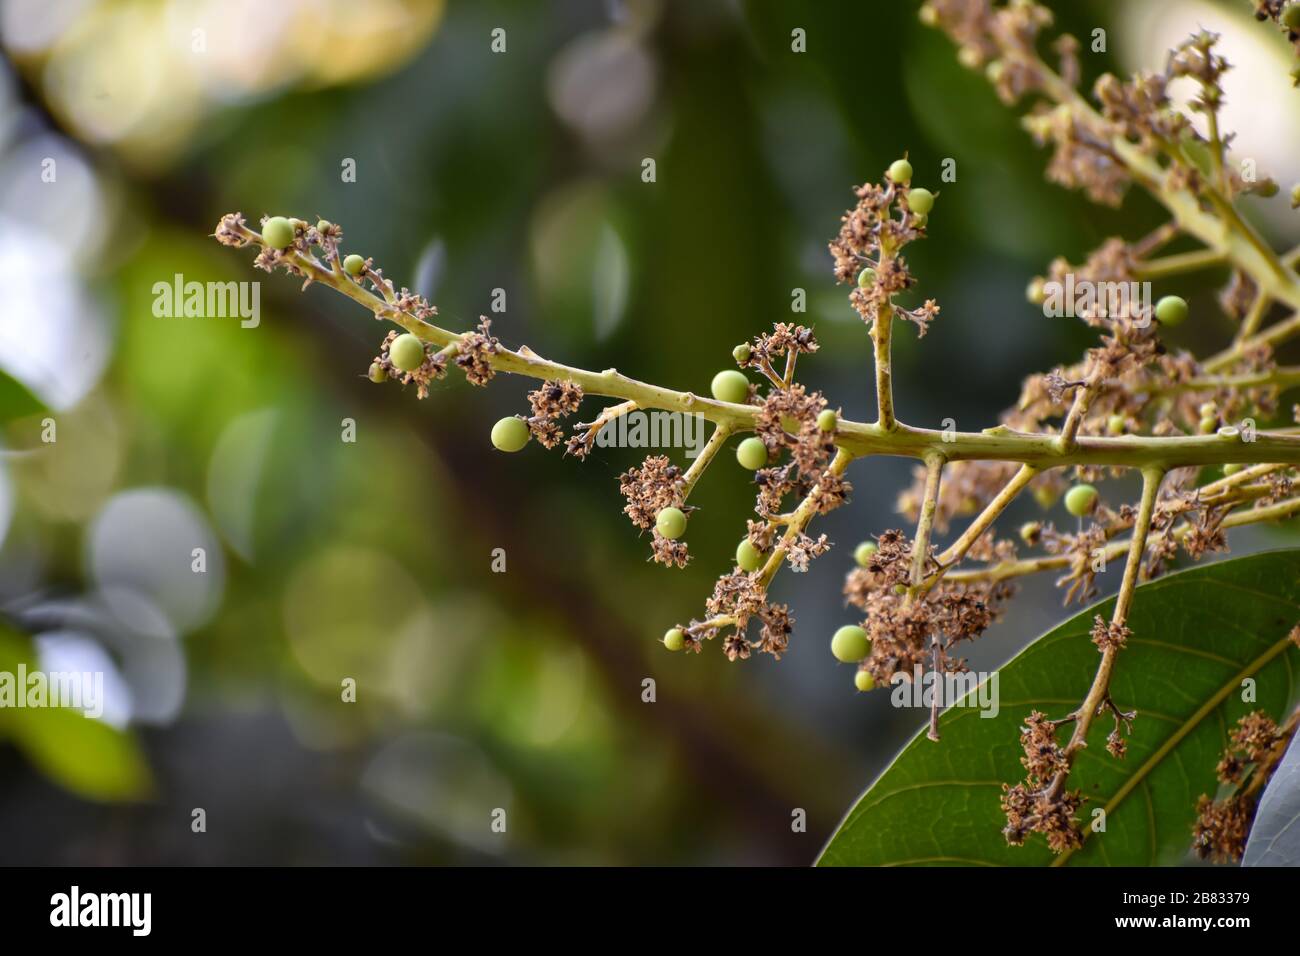 Flores y brotes de Mangifera indica, comúnmente conocido como mango con hojas verdes Foto de stock